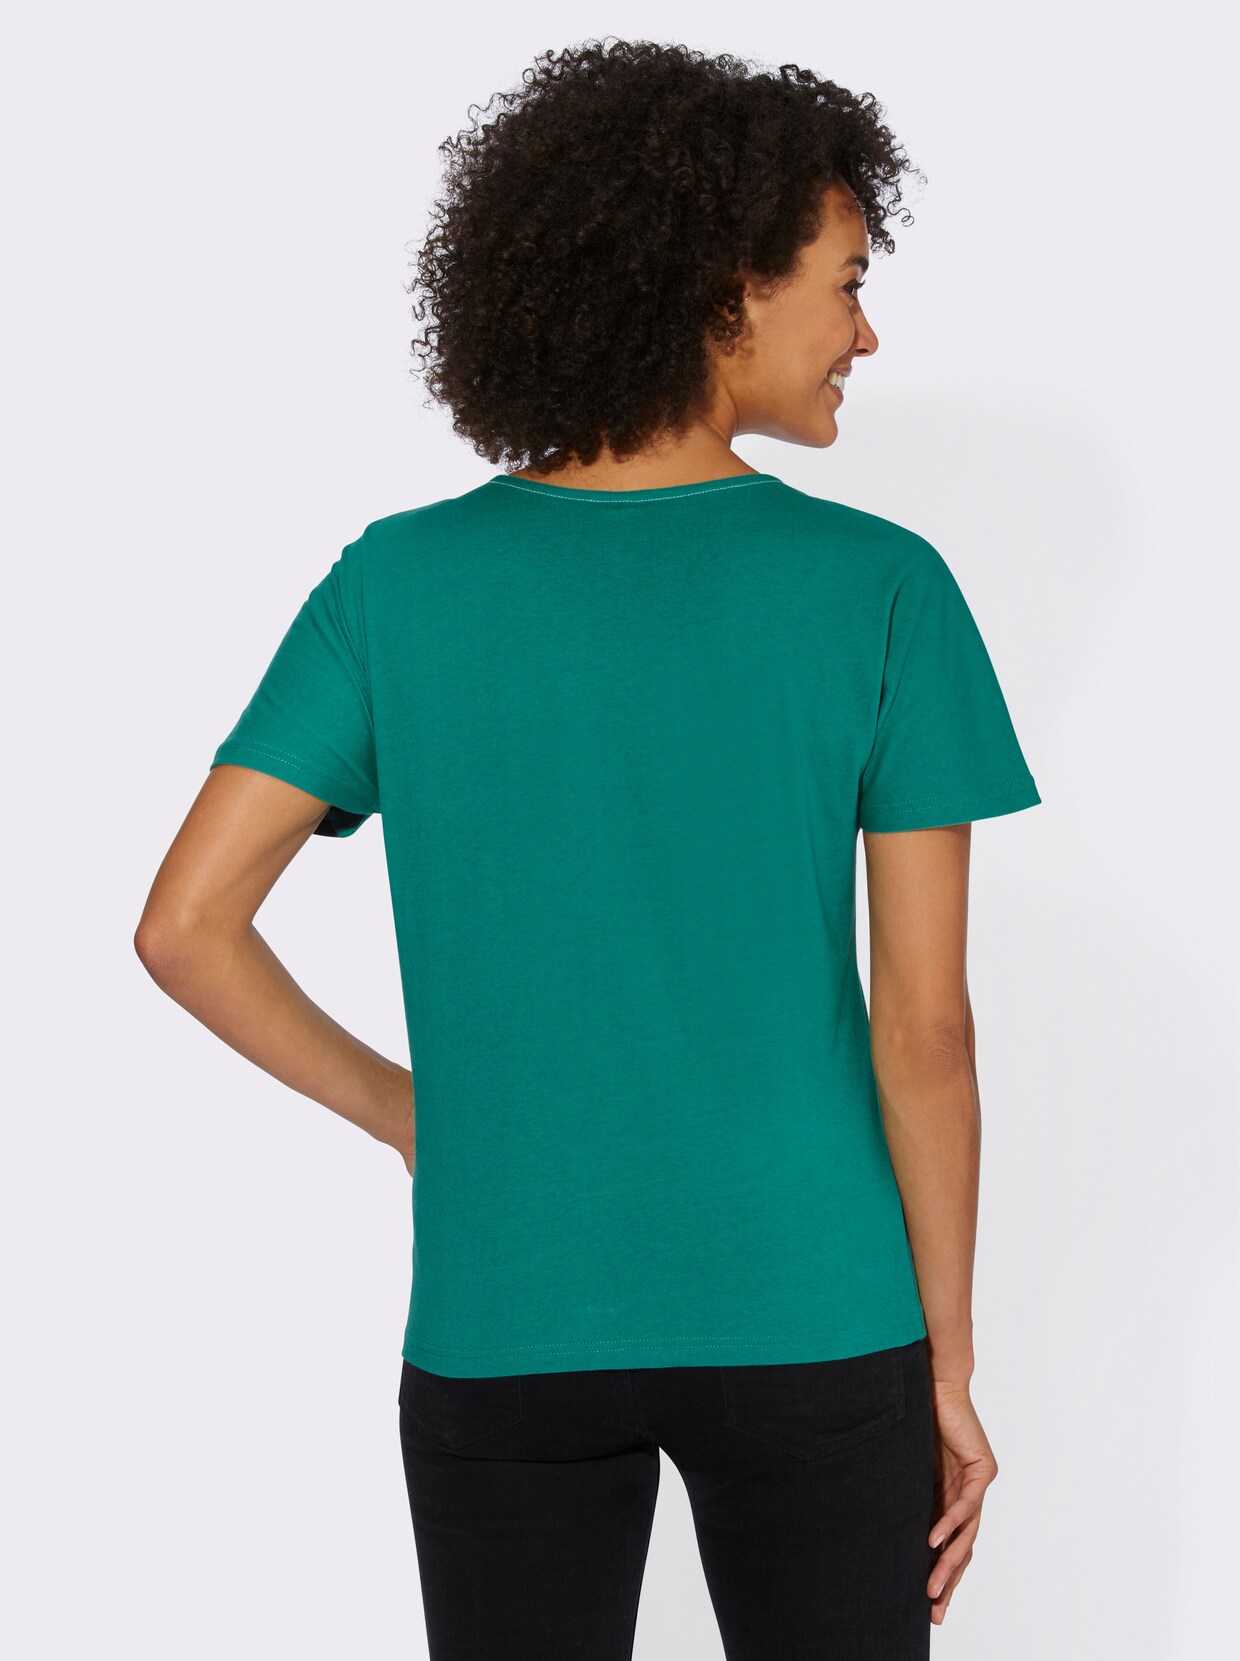 Tričko s krátkým rukávem - ecru-smaragdová